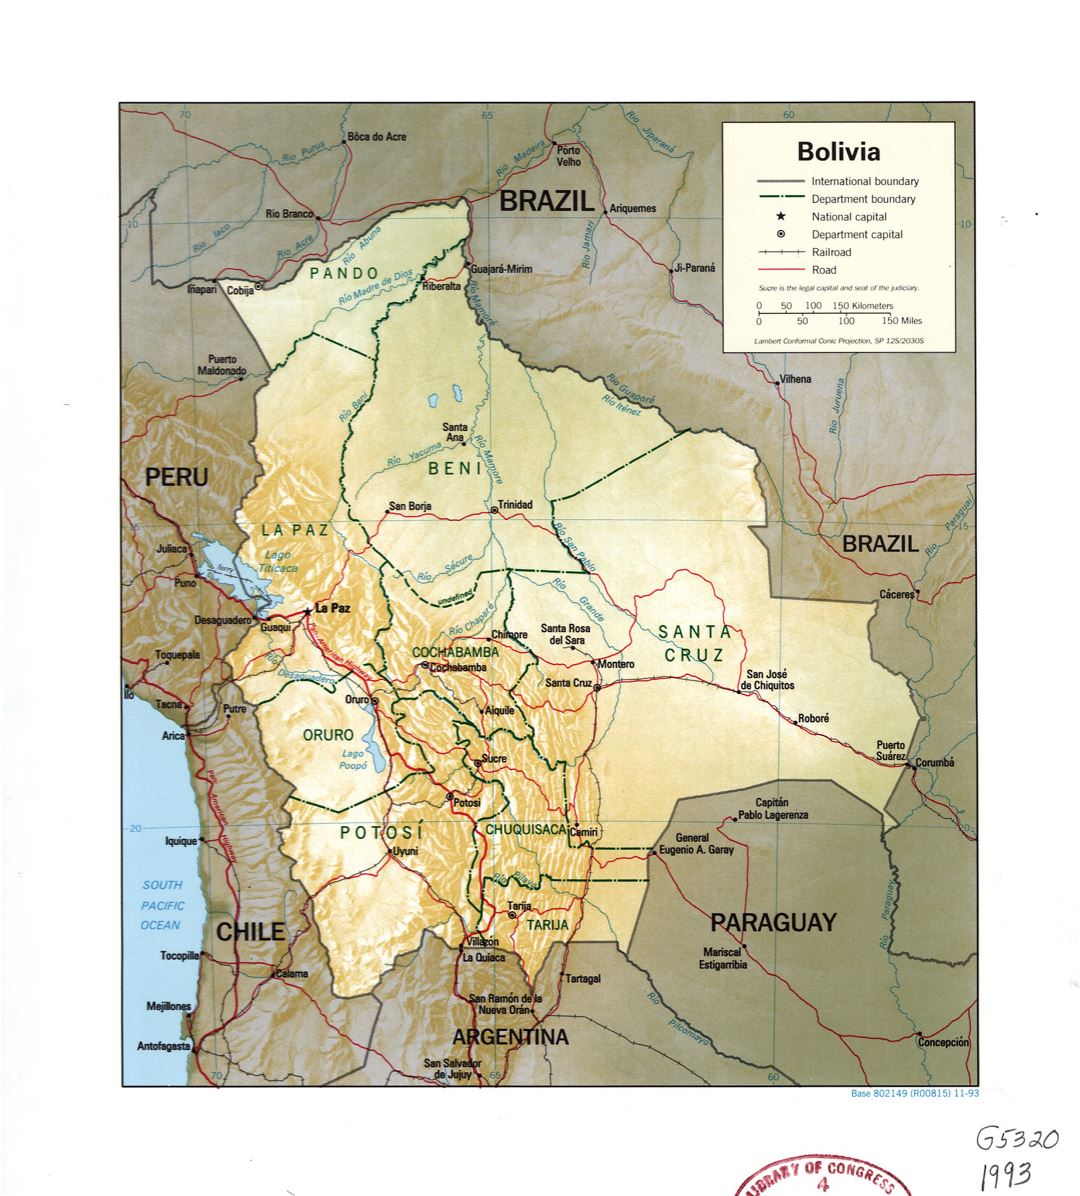 Grande detallado mapa político y administrativo de Bolivia con relieve, ríos, carreteras, ferrocarriles y principales ciudades - 1993